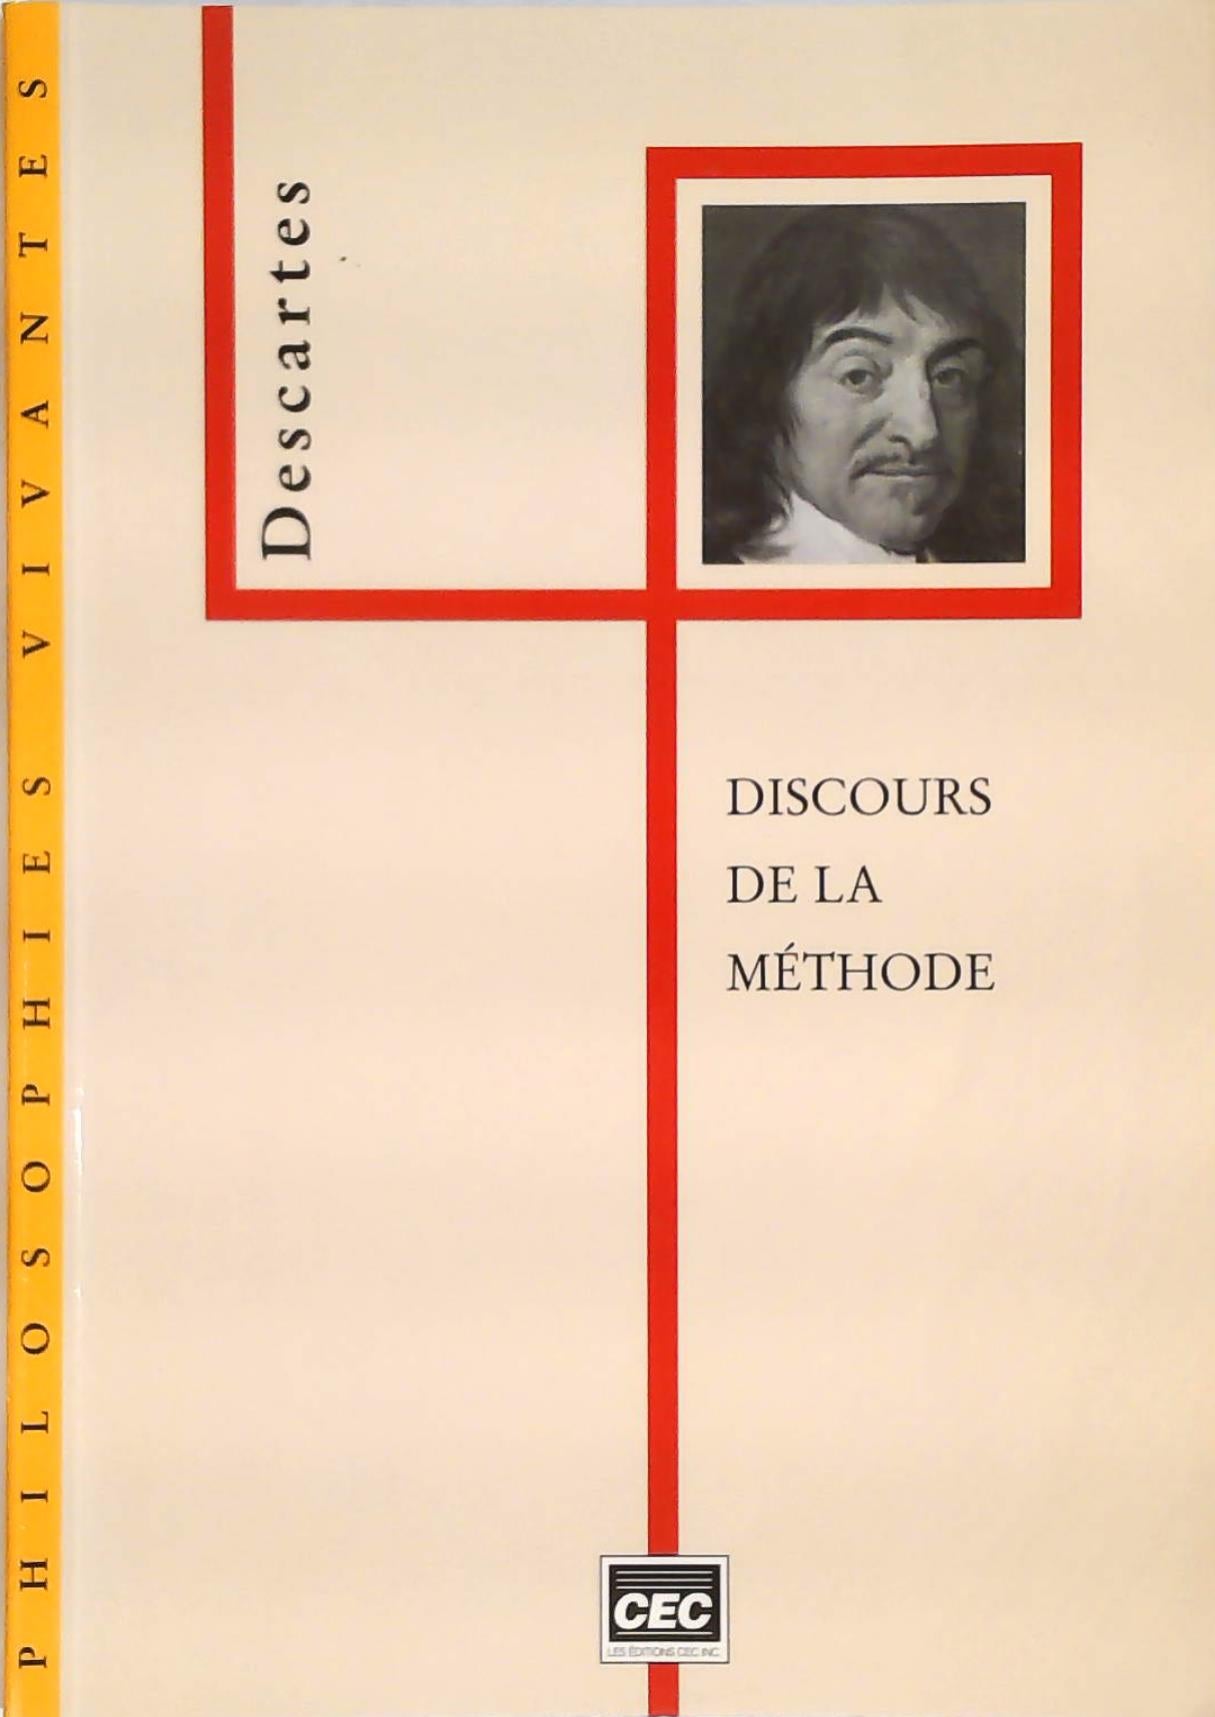 Livre ISBN 2761713141 Philosophies vivantes # 1 : Discours de la méthode (Descartes)